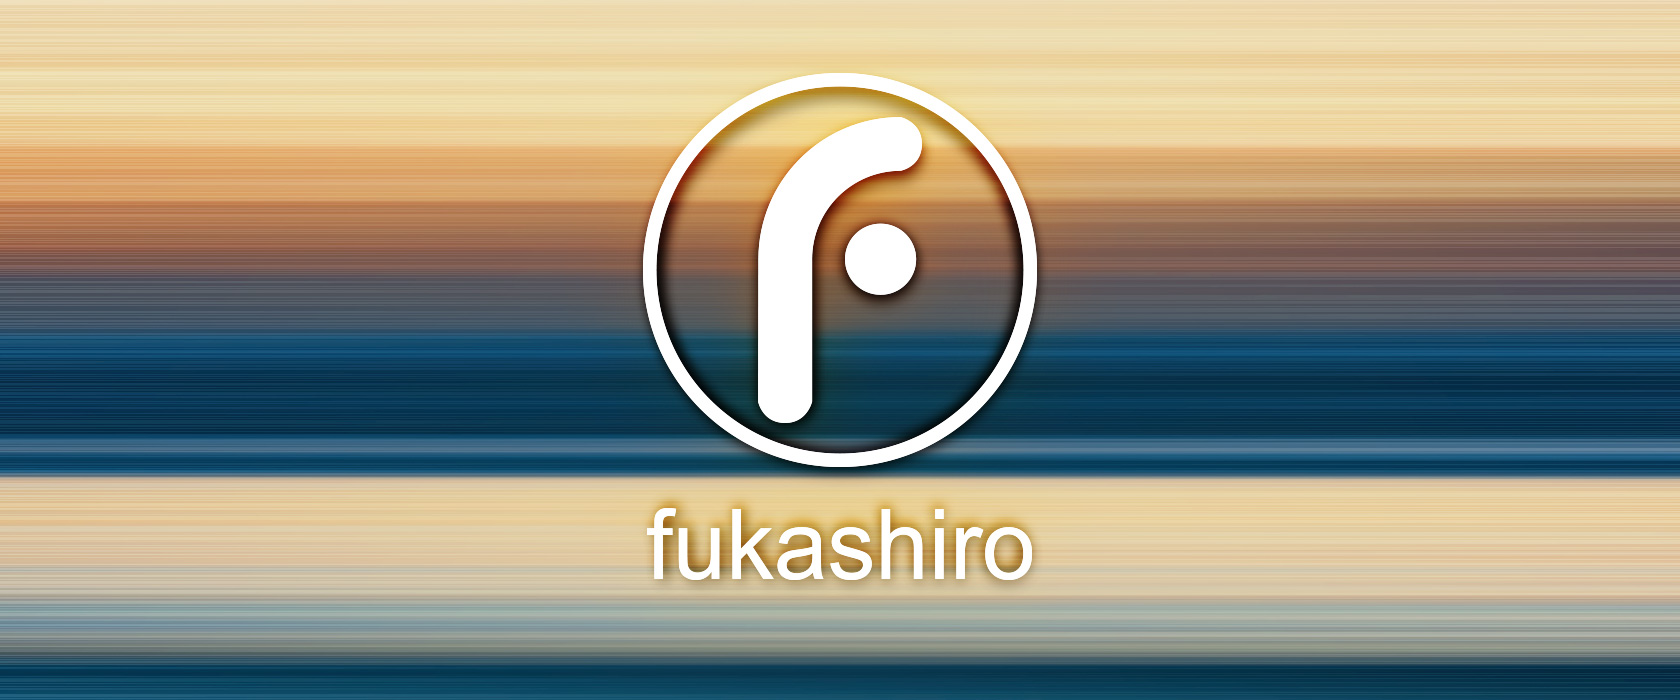 Fukashiro